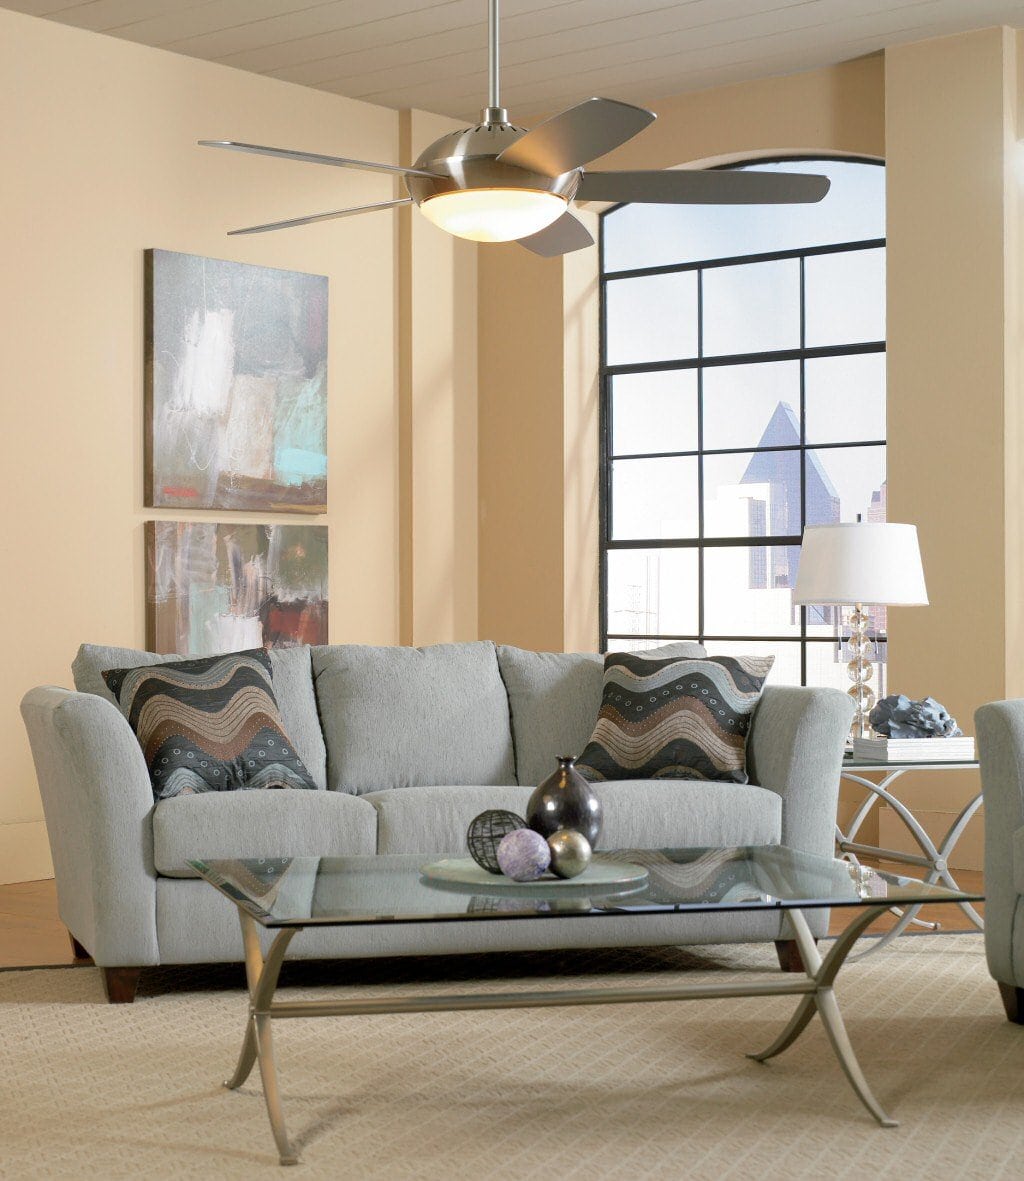 living-room-ceiling-fan-light